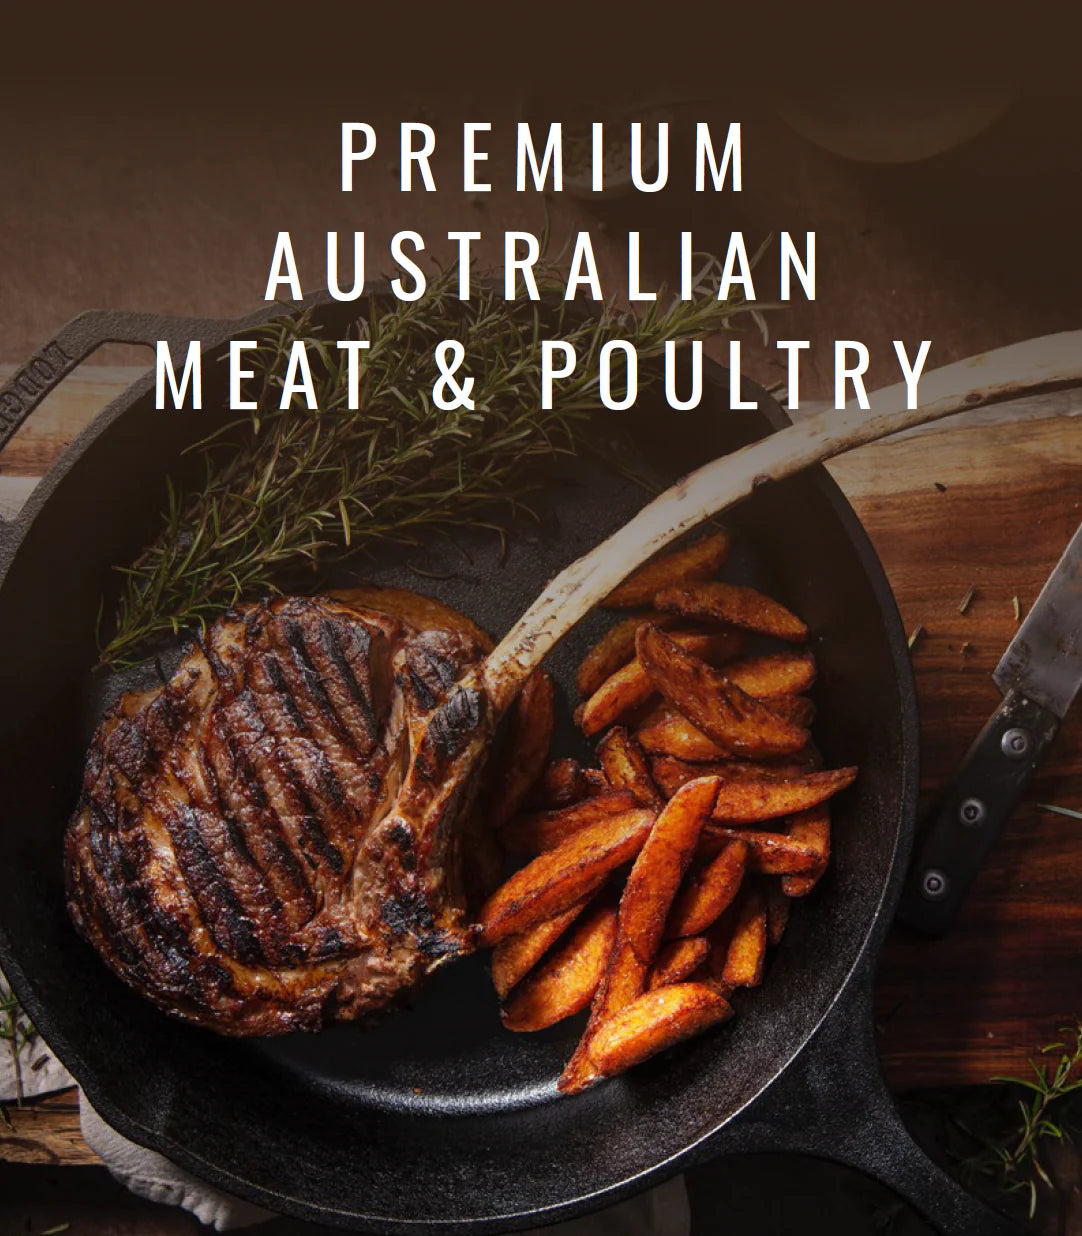 Premium Australian Meat & Poultry | Prestige Foods International